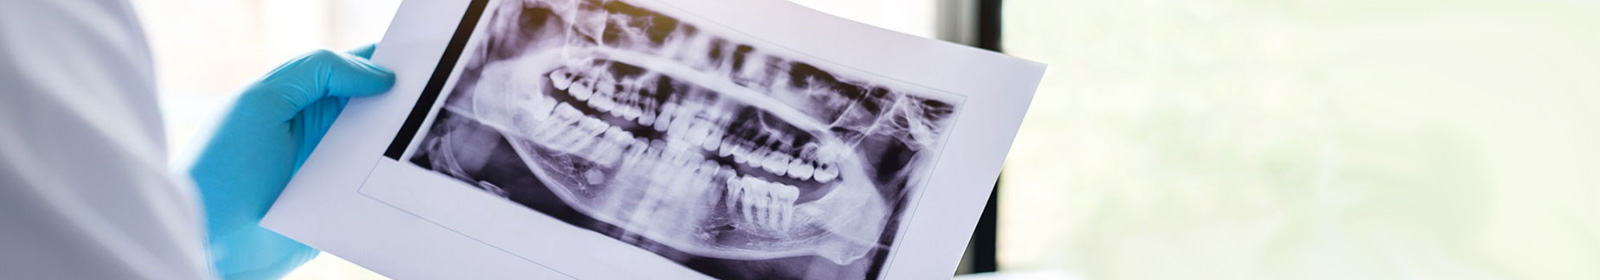 A dentist checking a dental X-ray